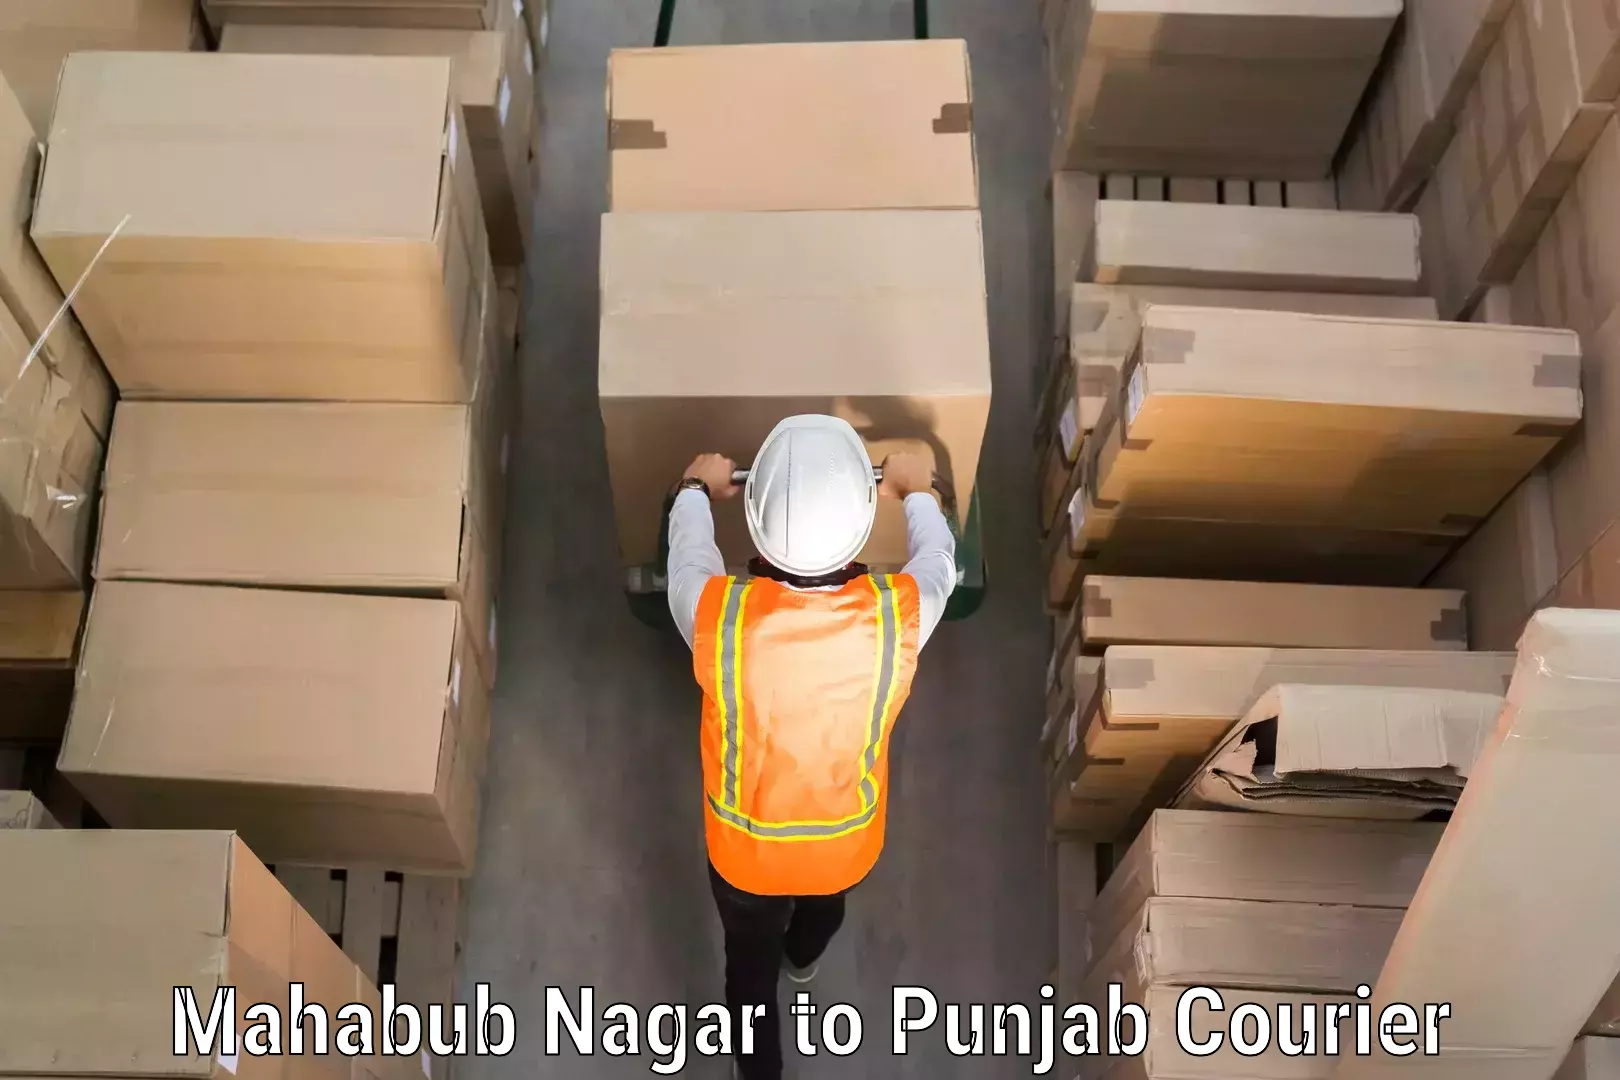 Luggage shipment tracking Mahabub Nagar to Punjab